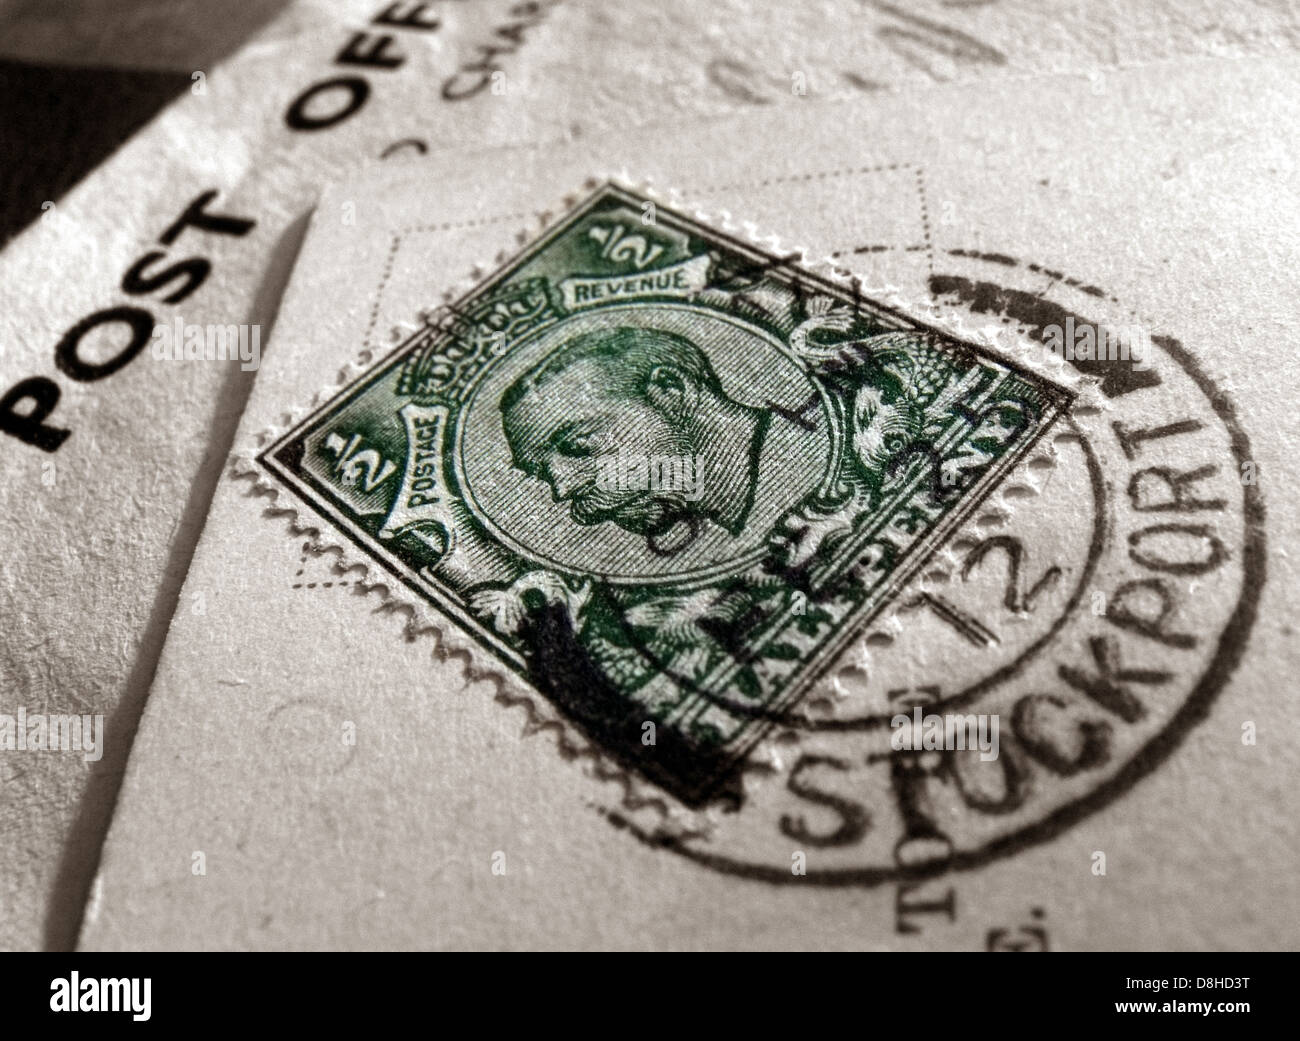 La moitié vert Penny British Stamp oblitérée Stockport Cheshire England UK Banque D'Images